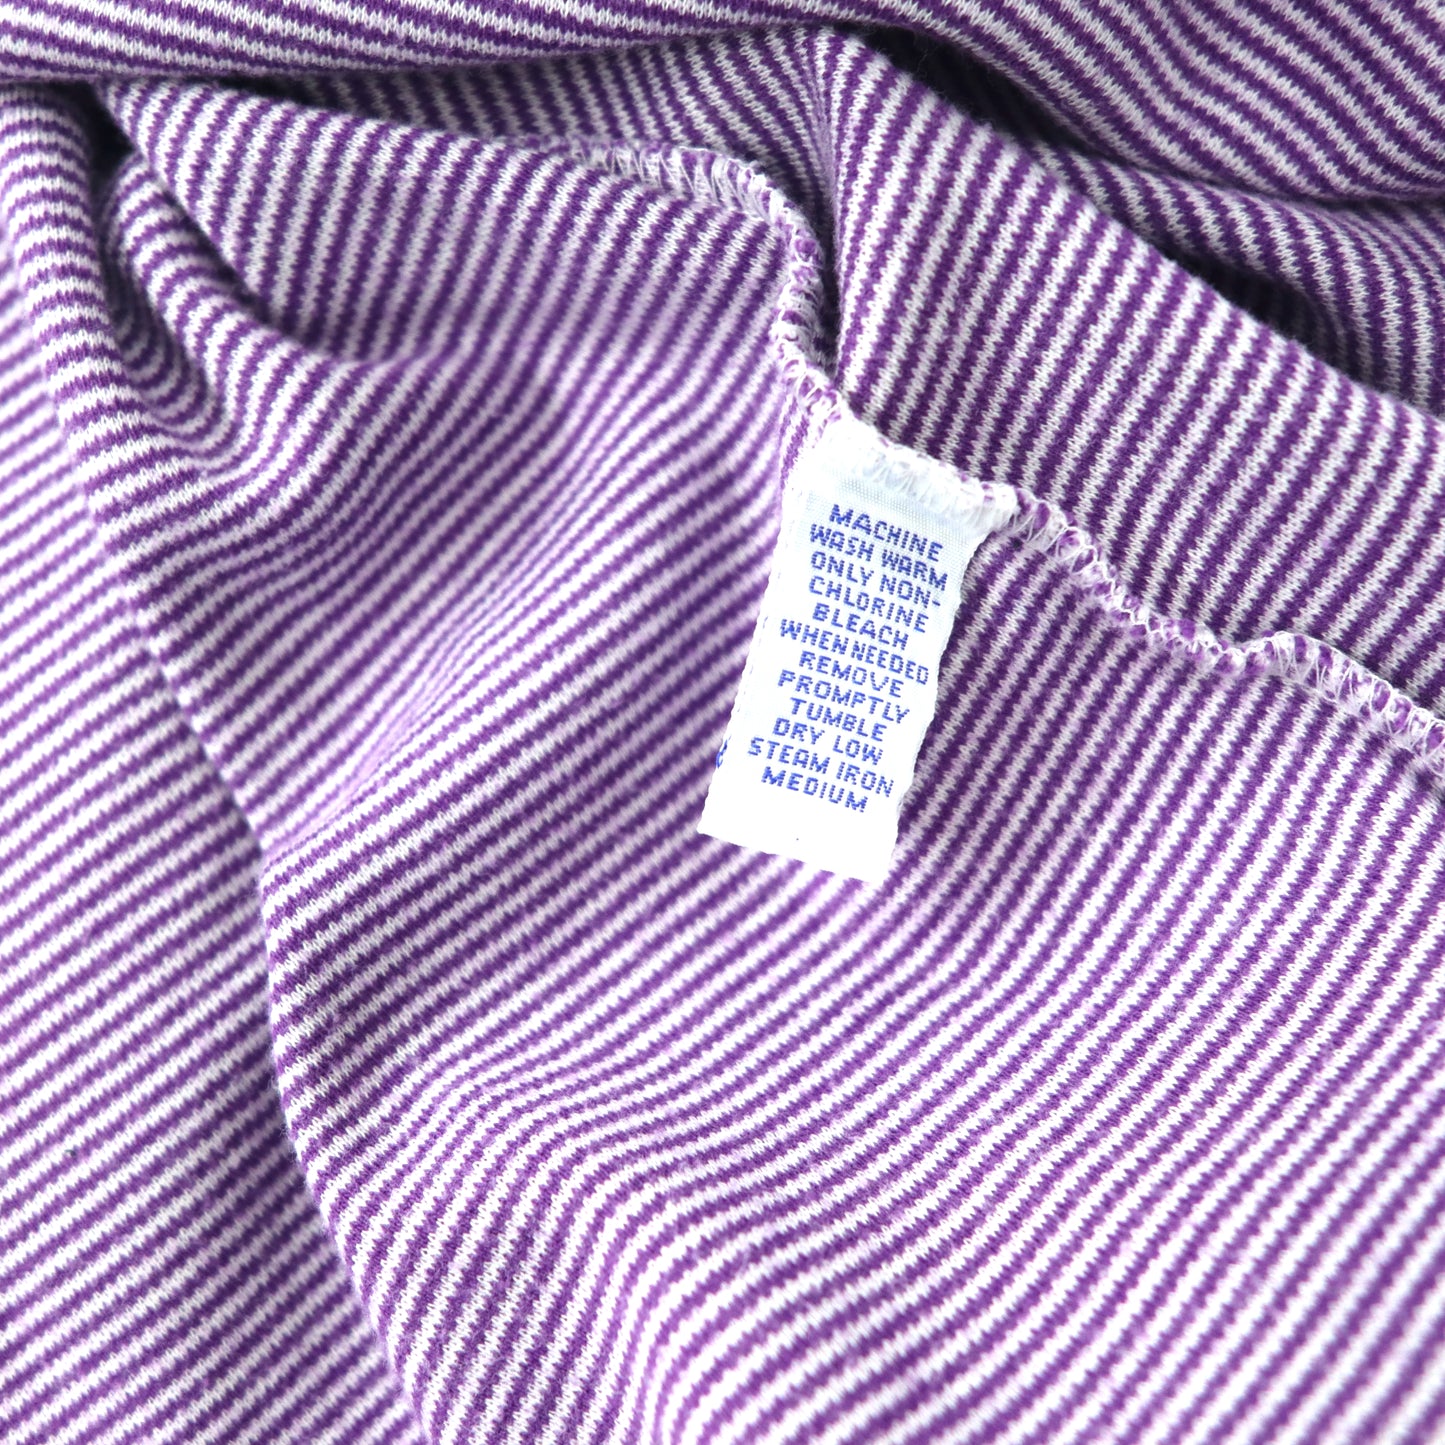 Polo by Ralph Lauren ボーダー ポロシャツ XL パープル コットン スモールポニー刺繍